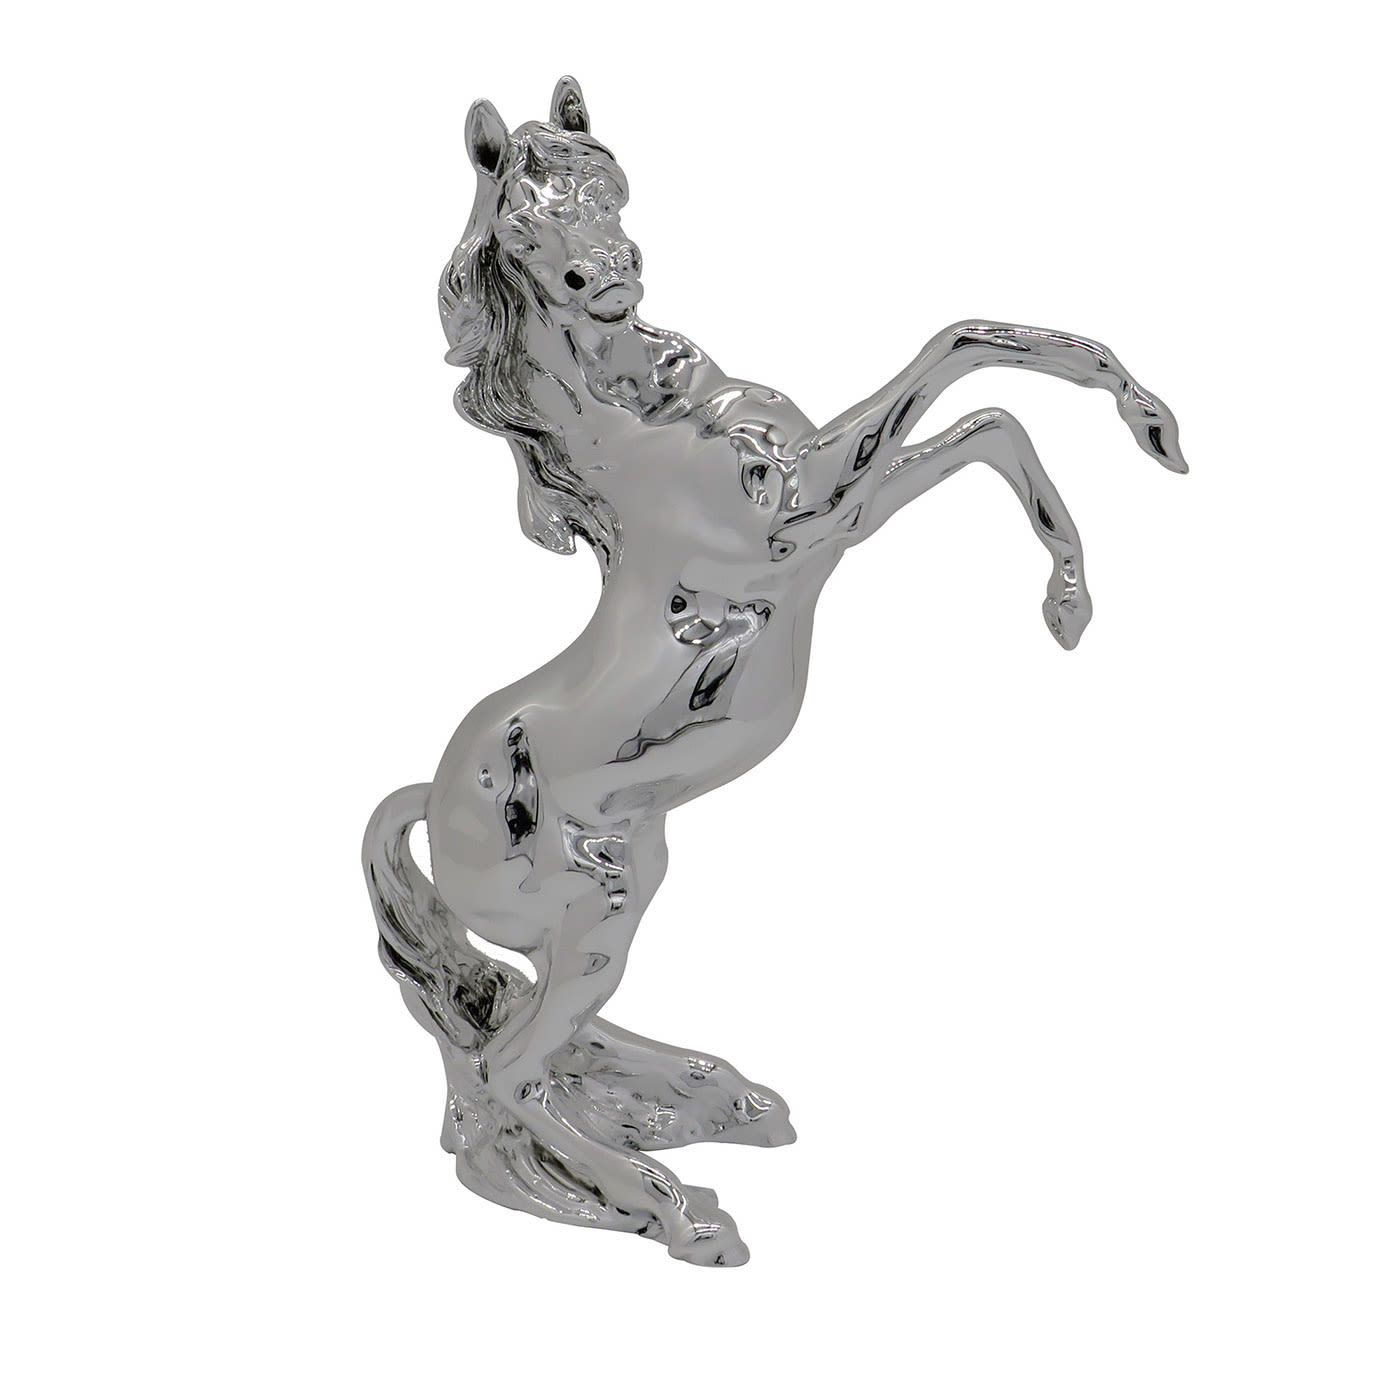 Cavallo Rampante Statuette - Diadema